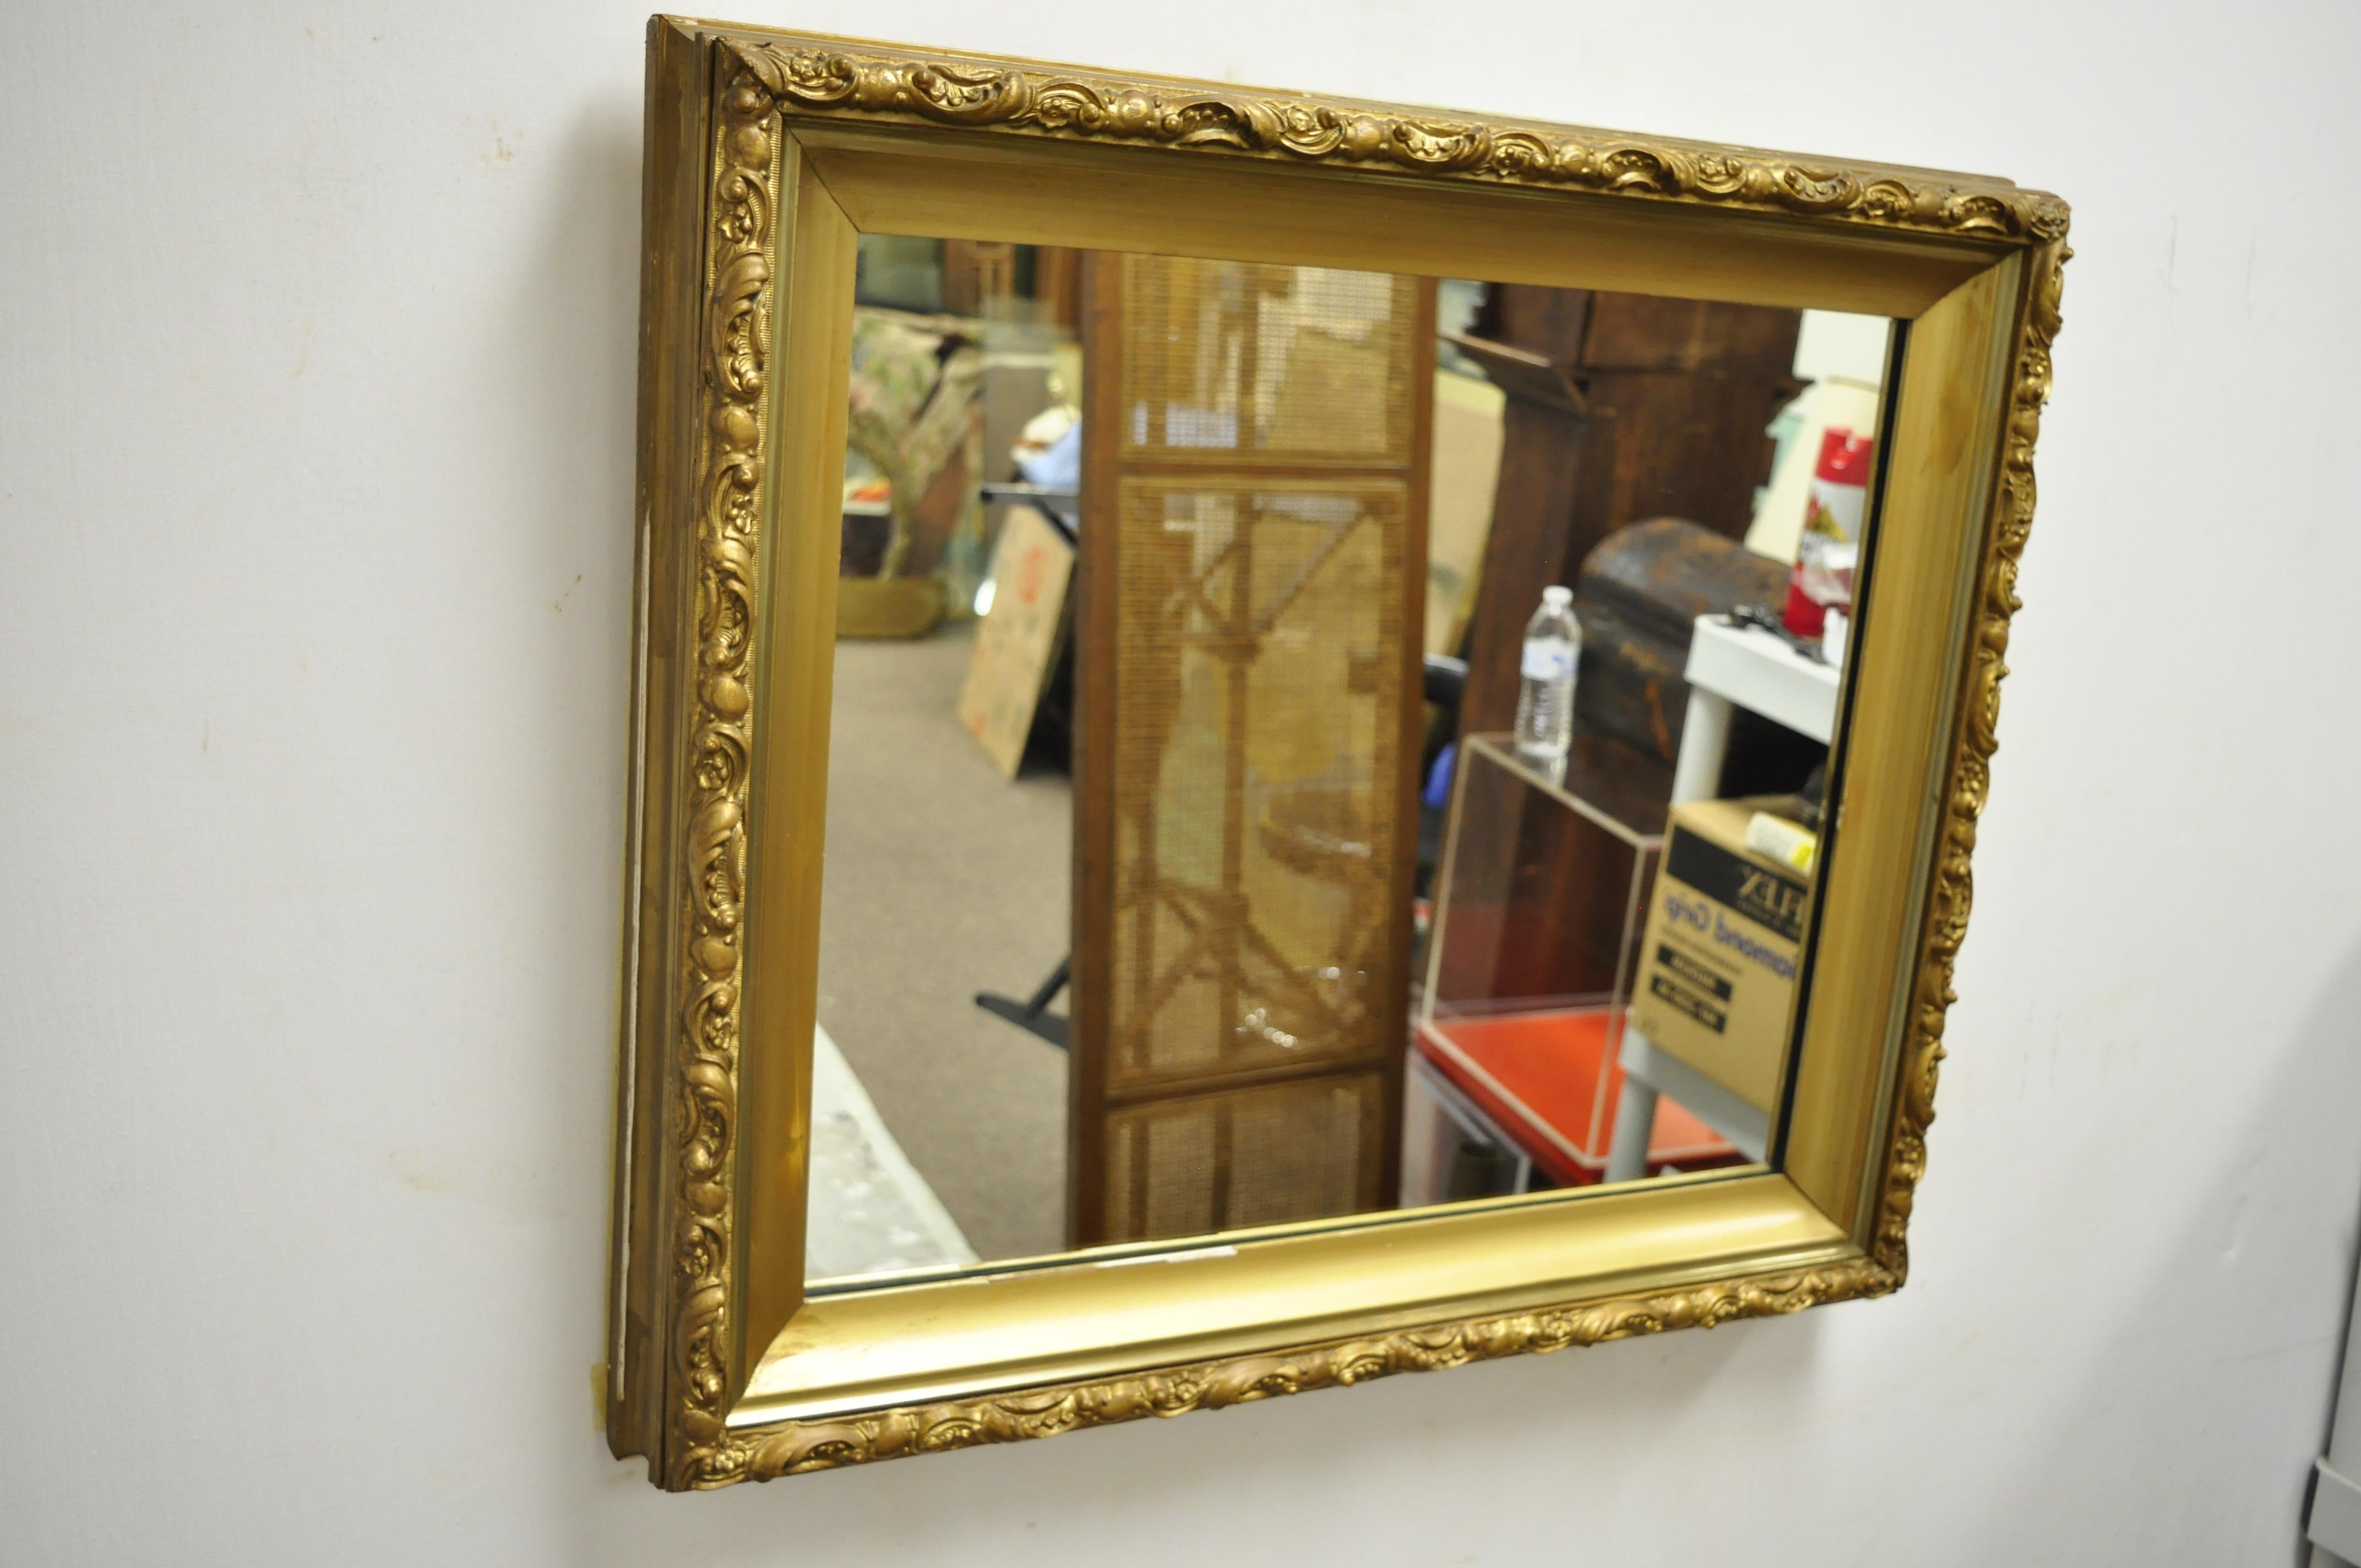 Miroir mural ancien en bois doré Gesso de 30 pouces à cadre profond de style victorien français, vers le début des années 1900. Mesures : 26,75